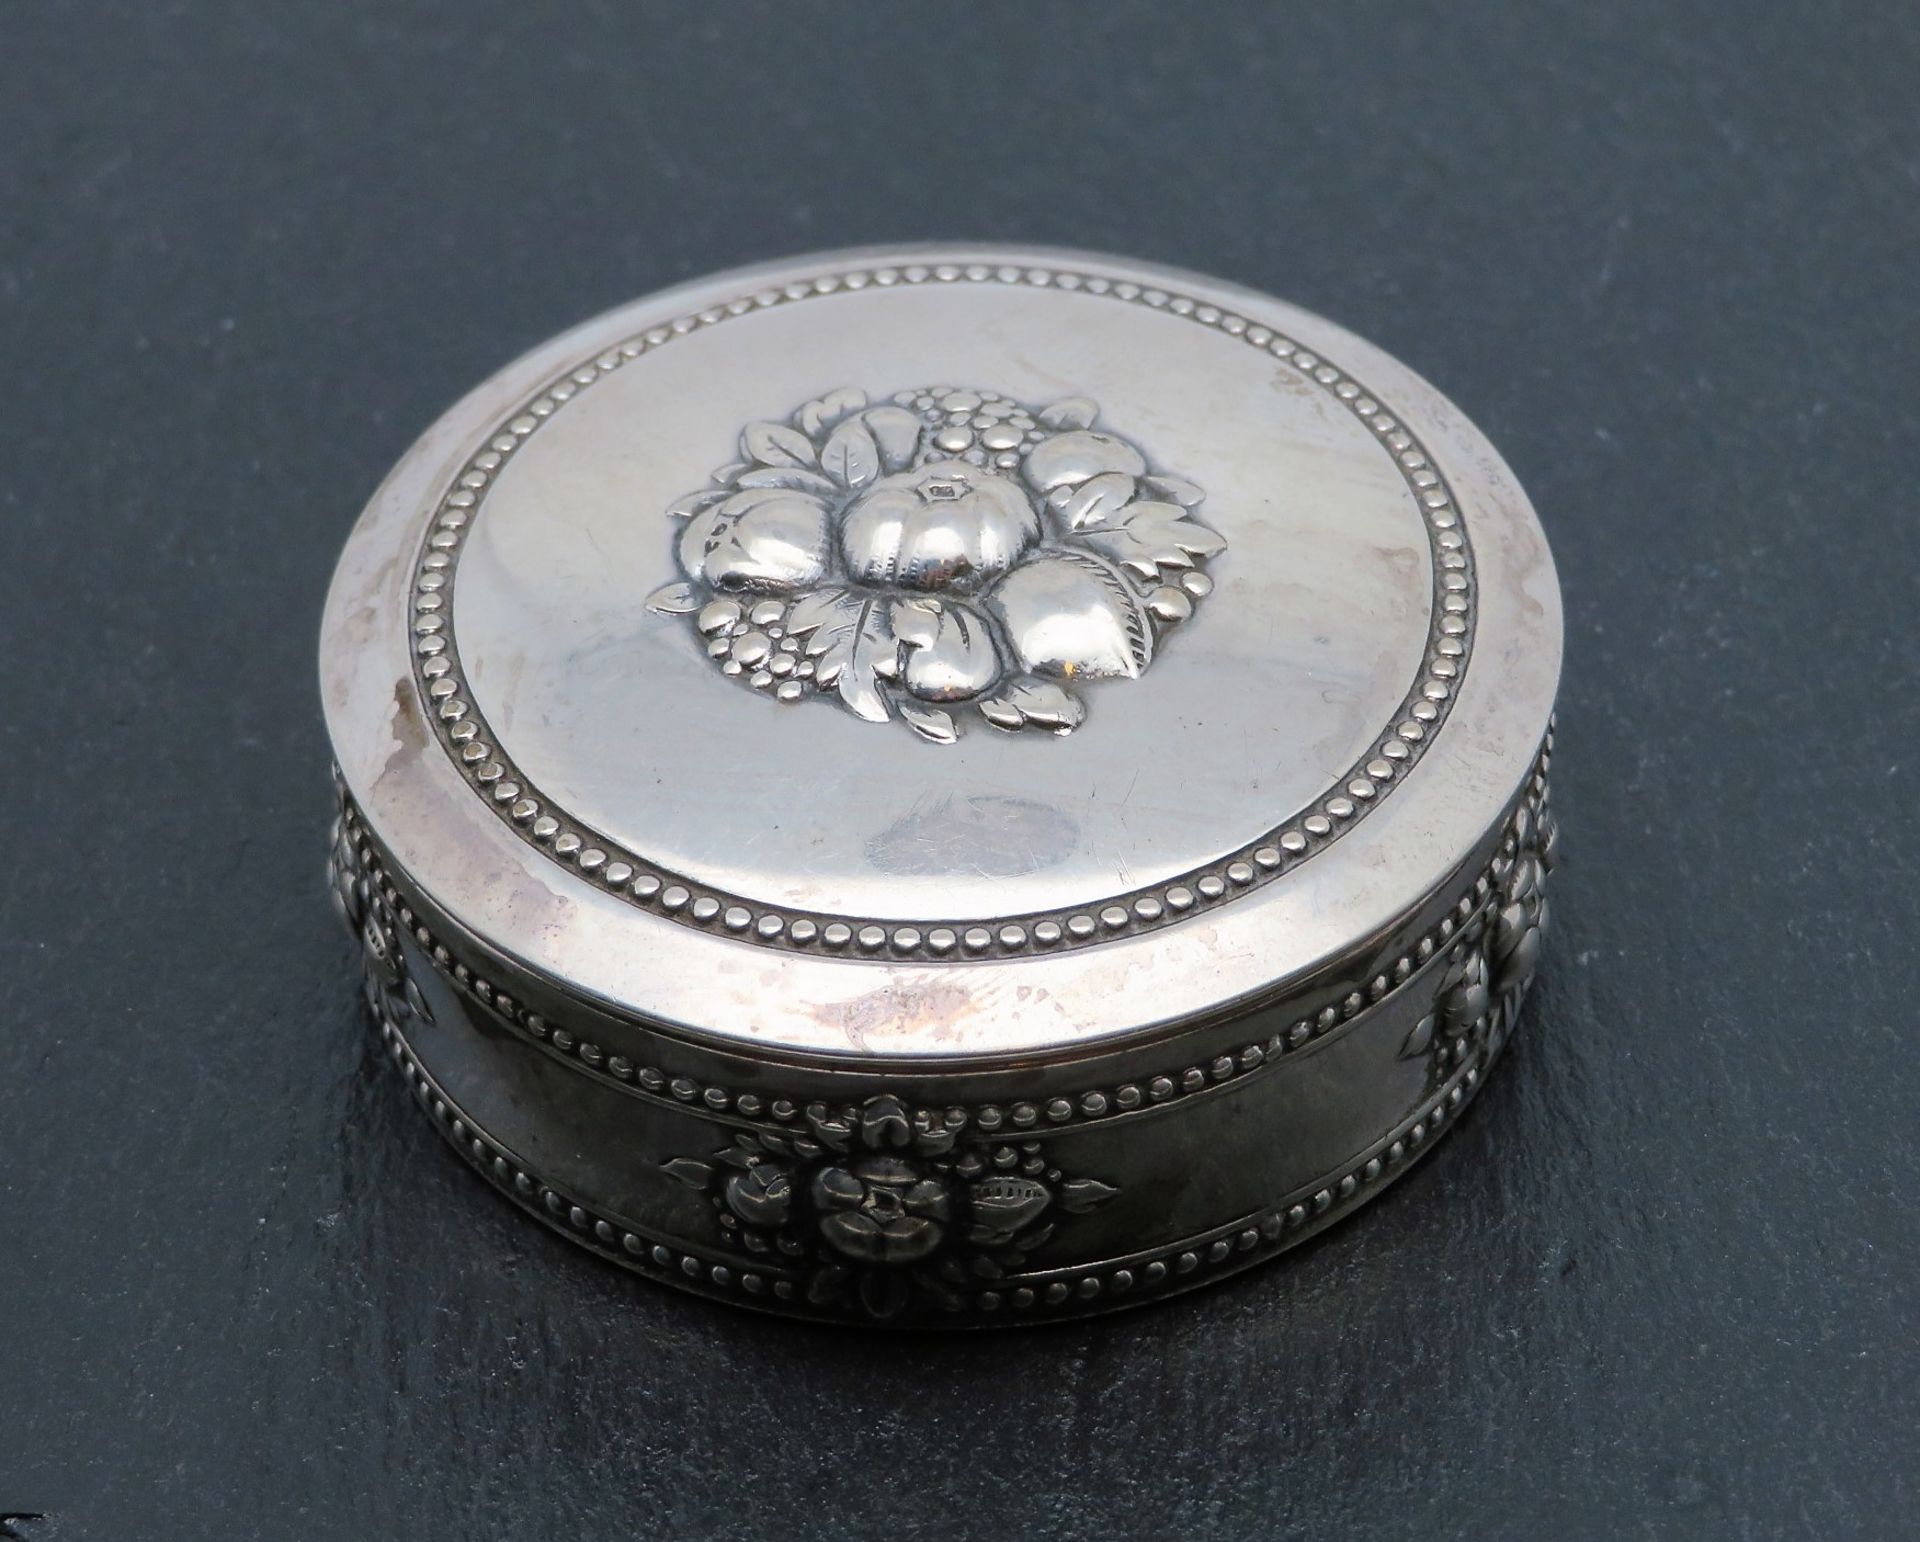 Deckeldose, um 1900, Silber 835/000, gepunzt, 33,7 g, reliefiertes Obstdekor, h 2,5 cm, d 6 cm.